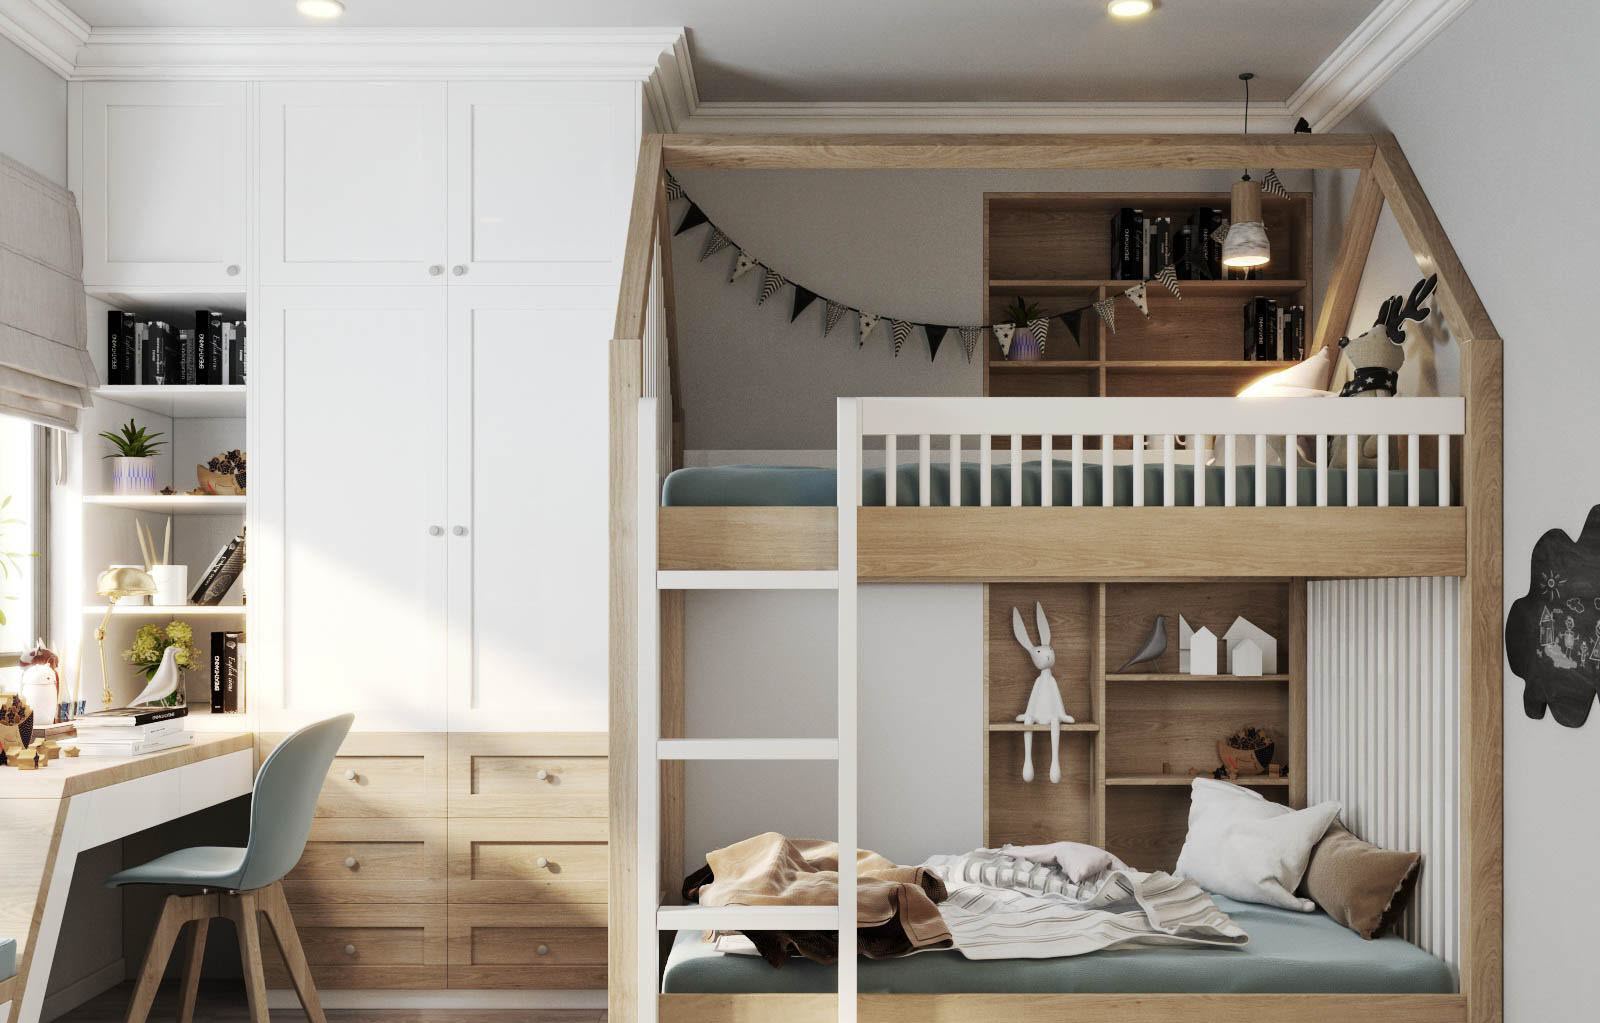 Phòng ngủ trẻ em với thiết kế trẻ trung, linh hoạt hơn nhưng vẫn đảm bảo những đặc trưng cơ bản của phong cách Country House.